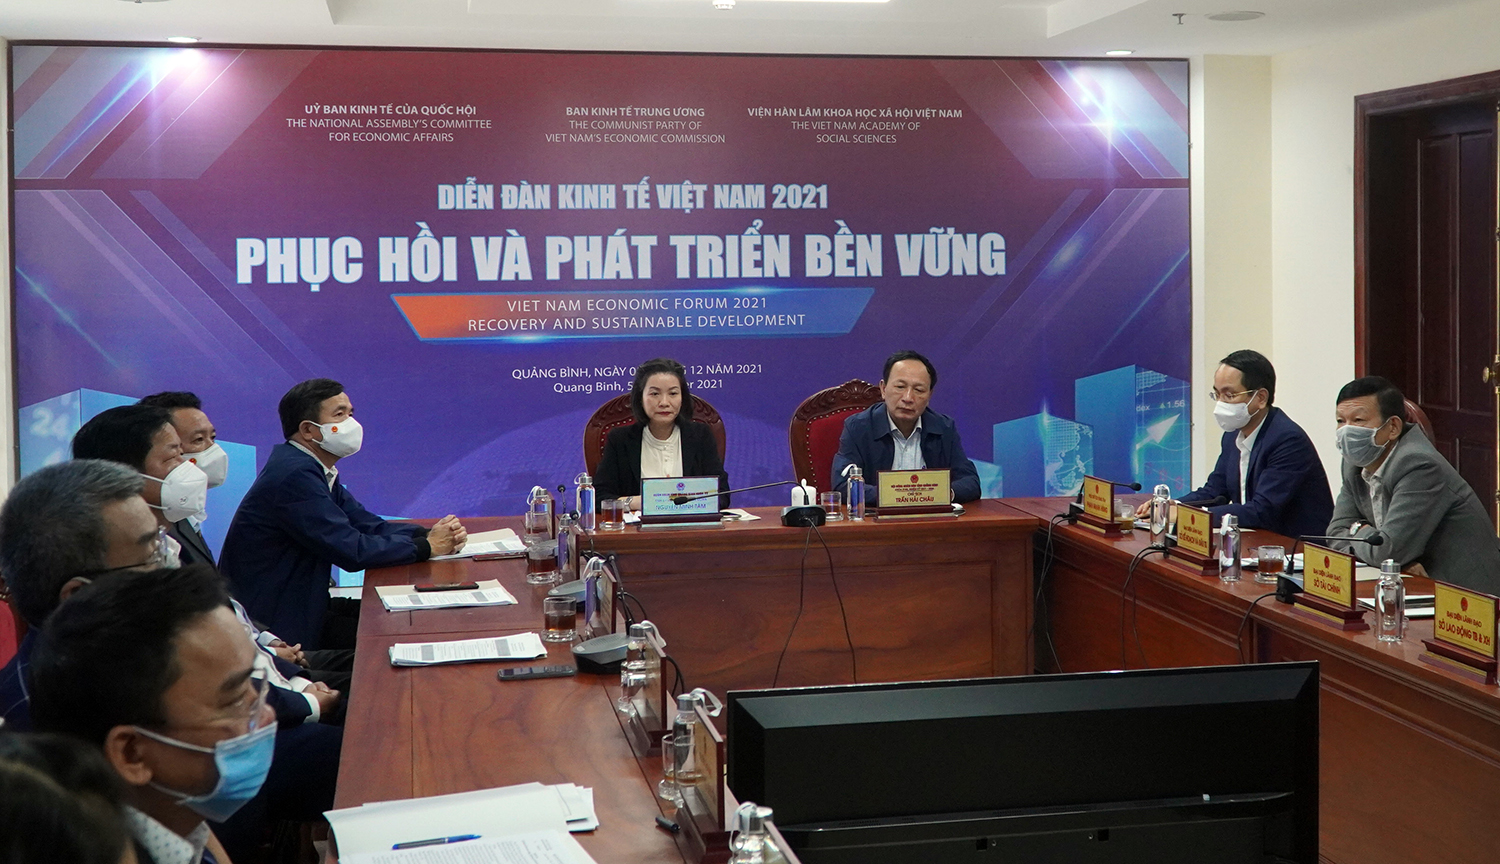 Quảng Bình tham gia Diễn đàn Kinh tế Việt Nam năm 2021 "Phục hồi và phát triển bền vững"